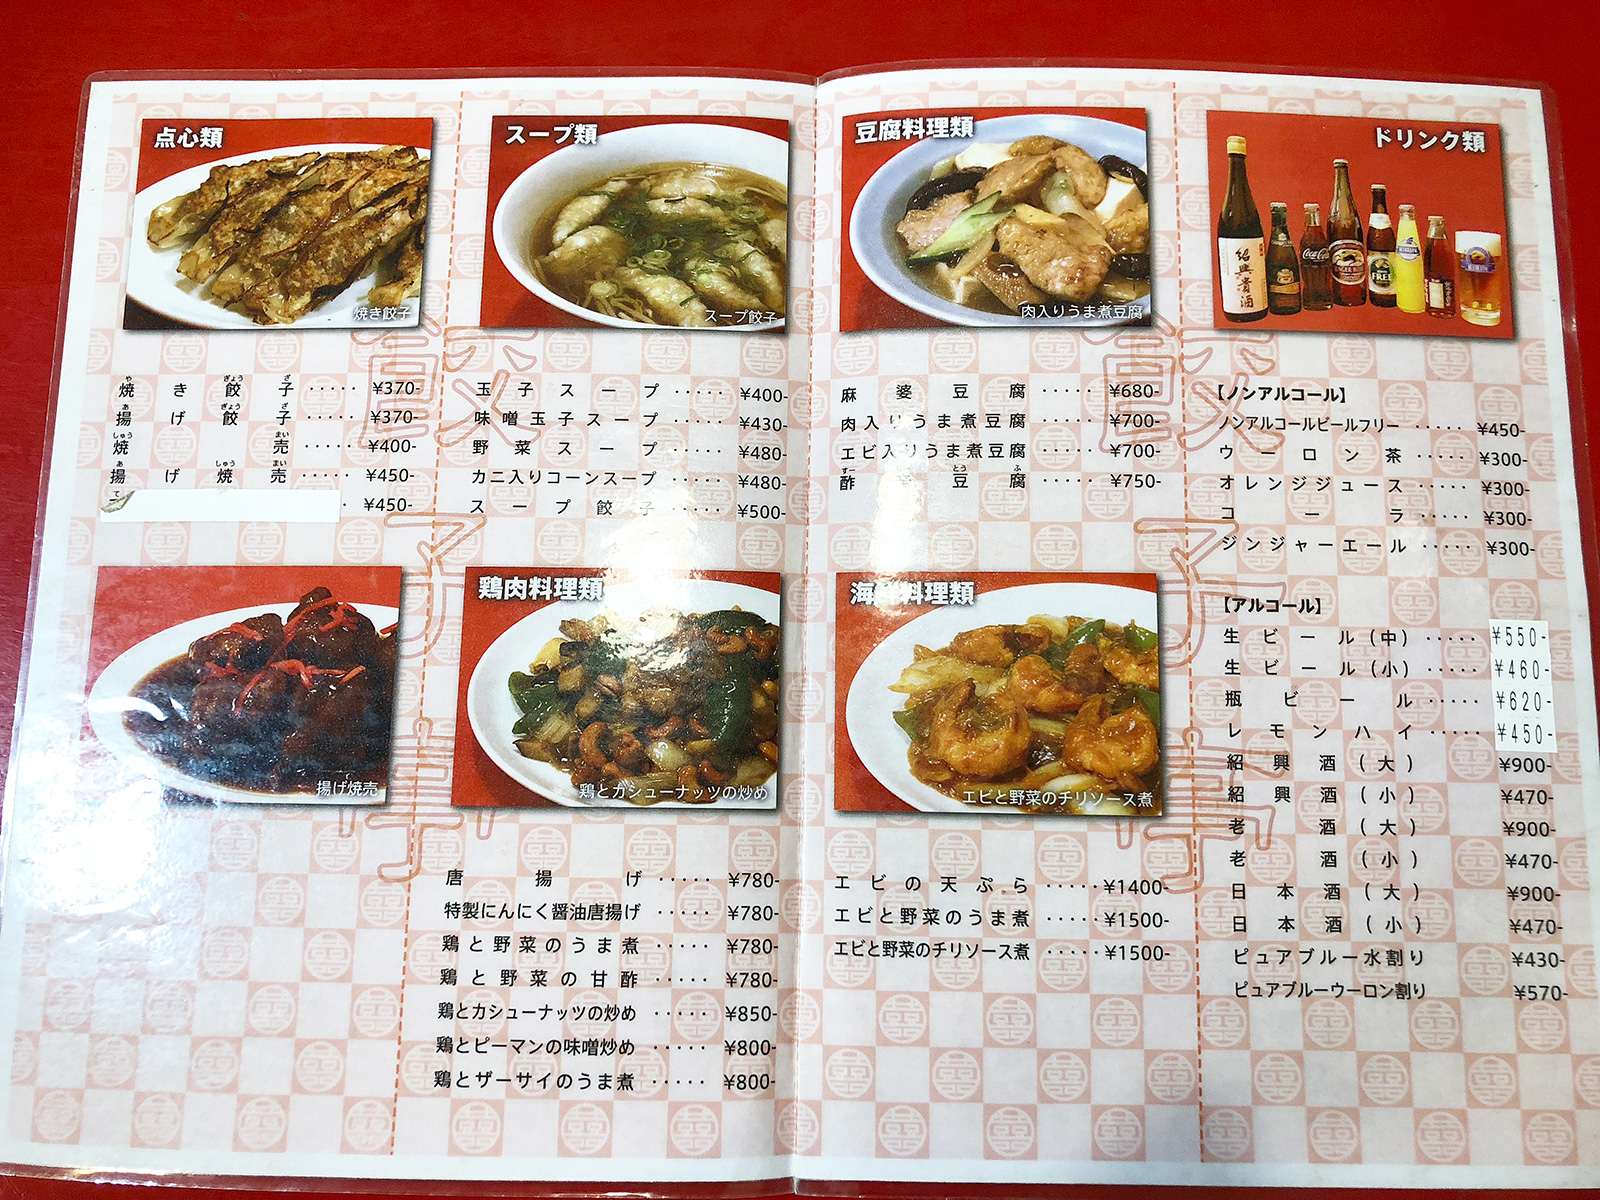 「餃子亭」の焼き餃子と台湾ラーメンのランチ @新川橋